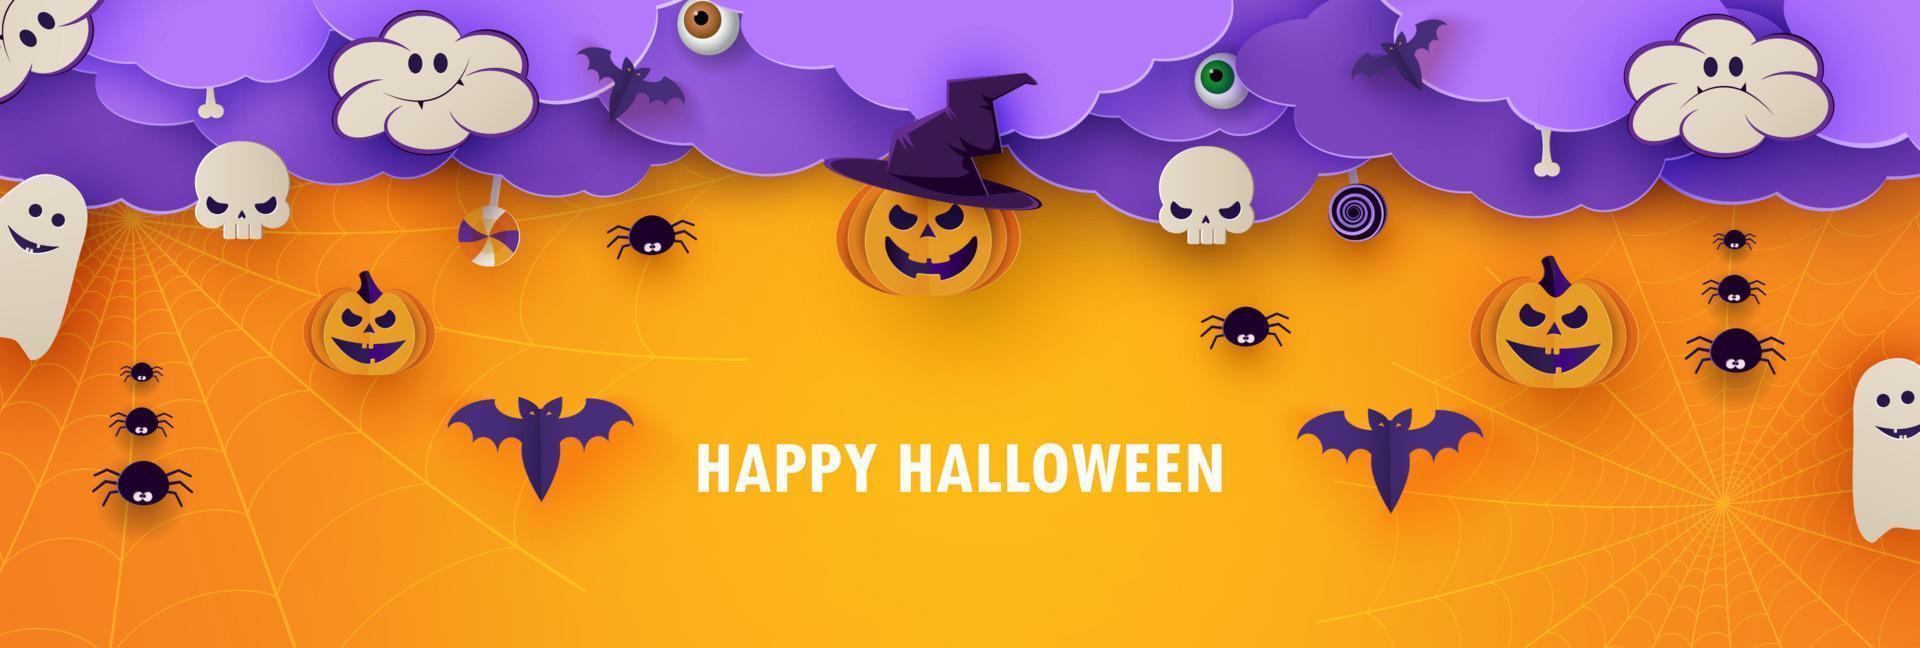 happy halloween banner of party uitnodiging oranje achtergrond met wolken, vleermuizen en pompoenen in papier knippen stijl. vectorillustratie. plaats voor tekst vector